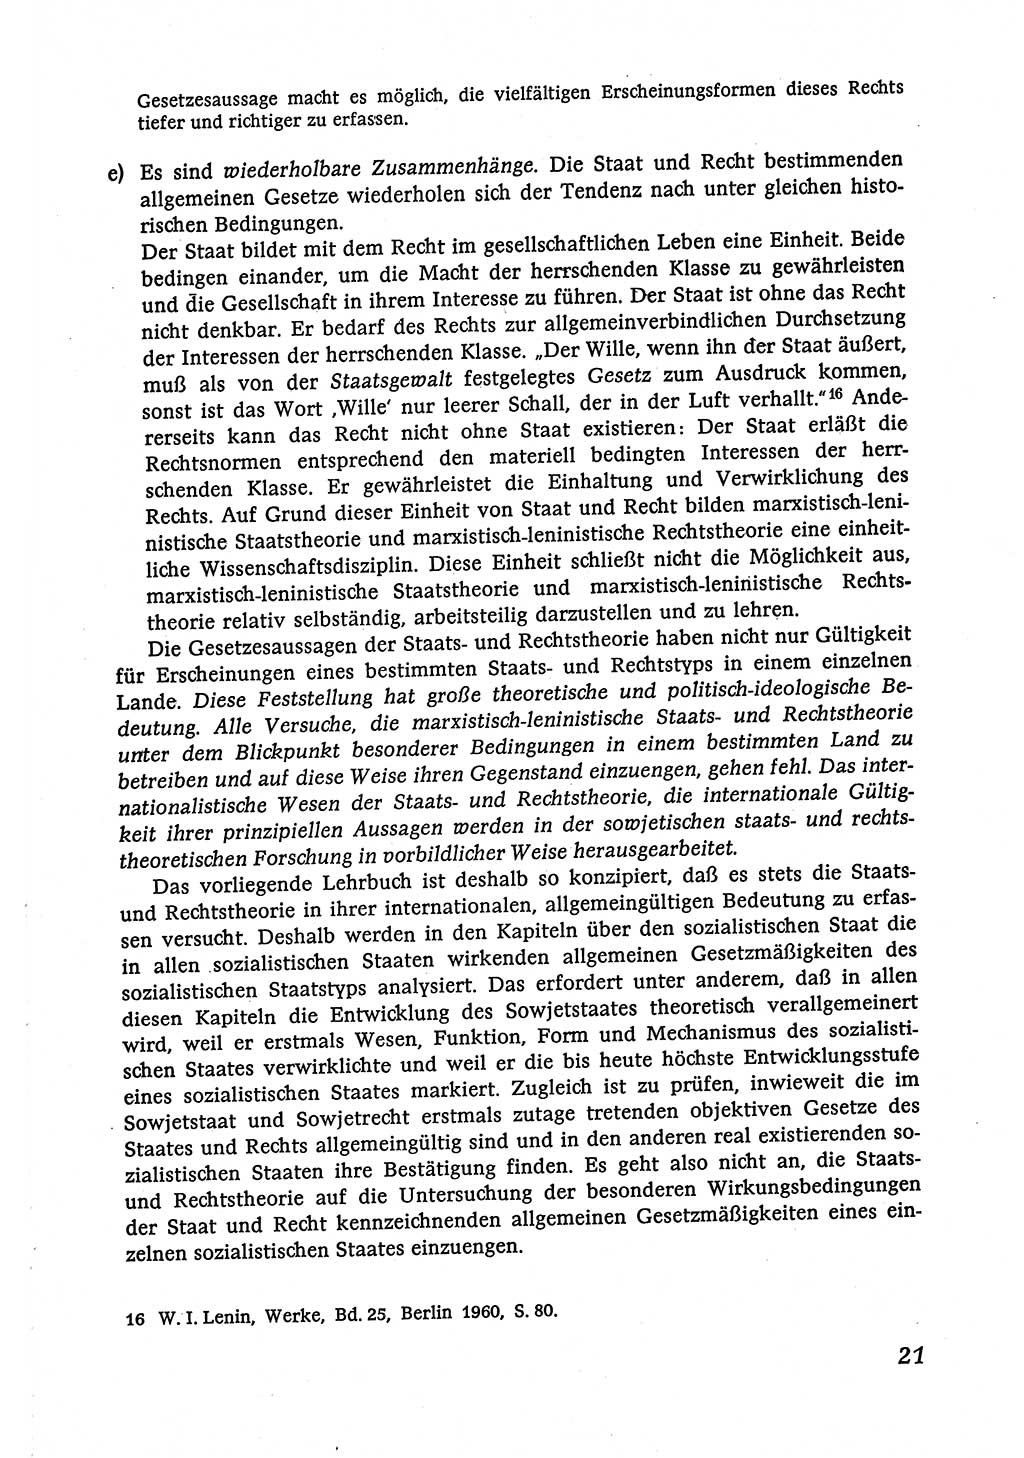 Marxistisch-leninistische (ML) Staats- und Rechtstheorie [Deutsche Demokratische Republik (DDR)], Lehrbuch 1980, Seite 21 (ML St.-R.-Th. DDR Lb. 1980, S. 21)